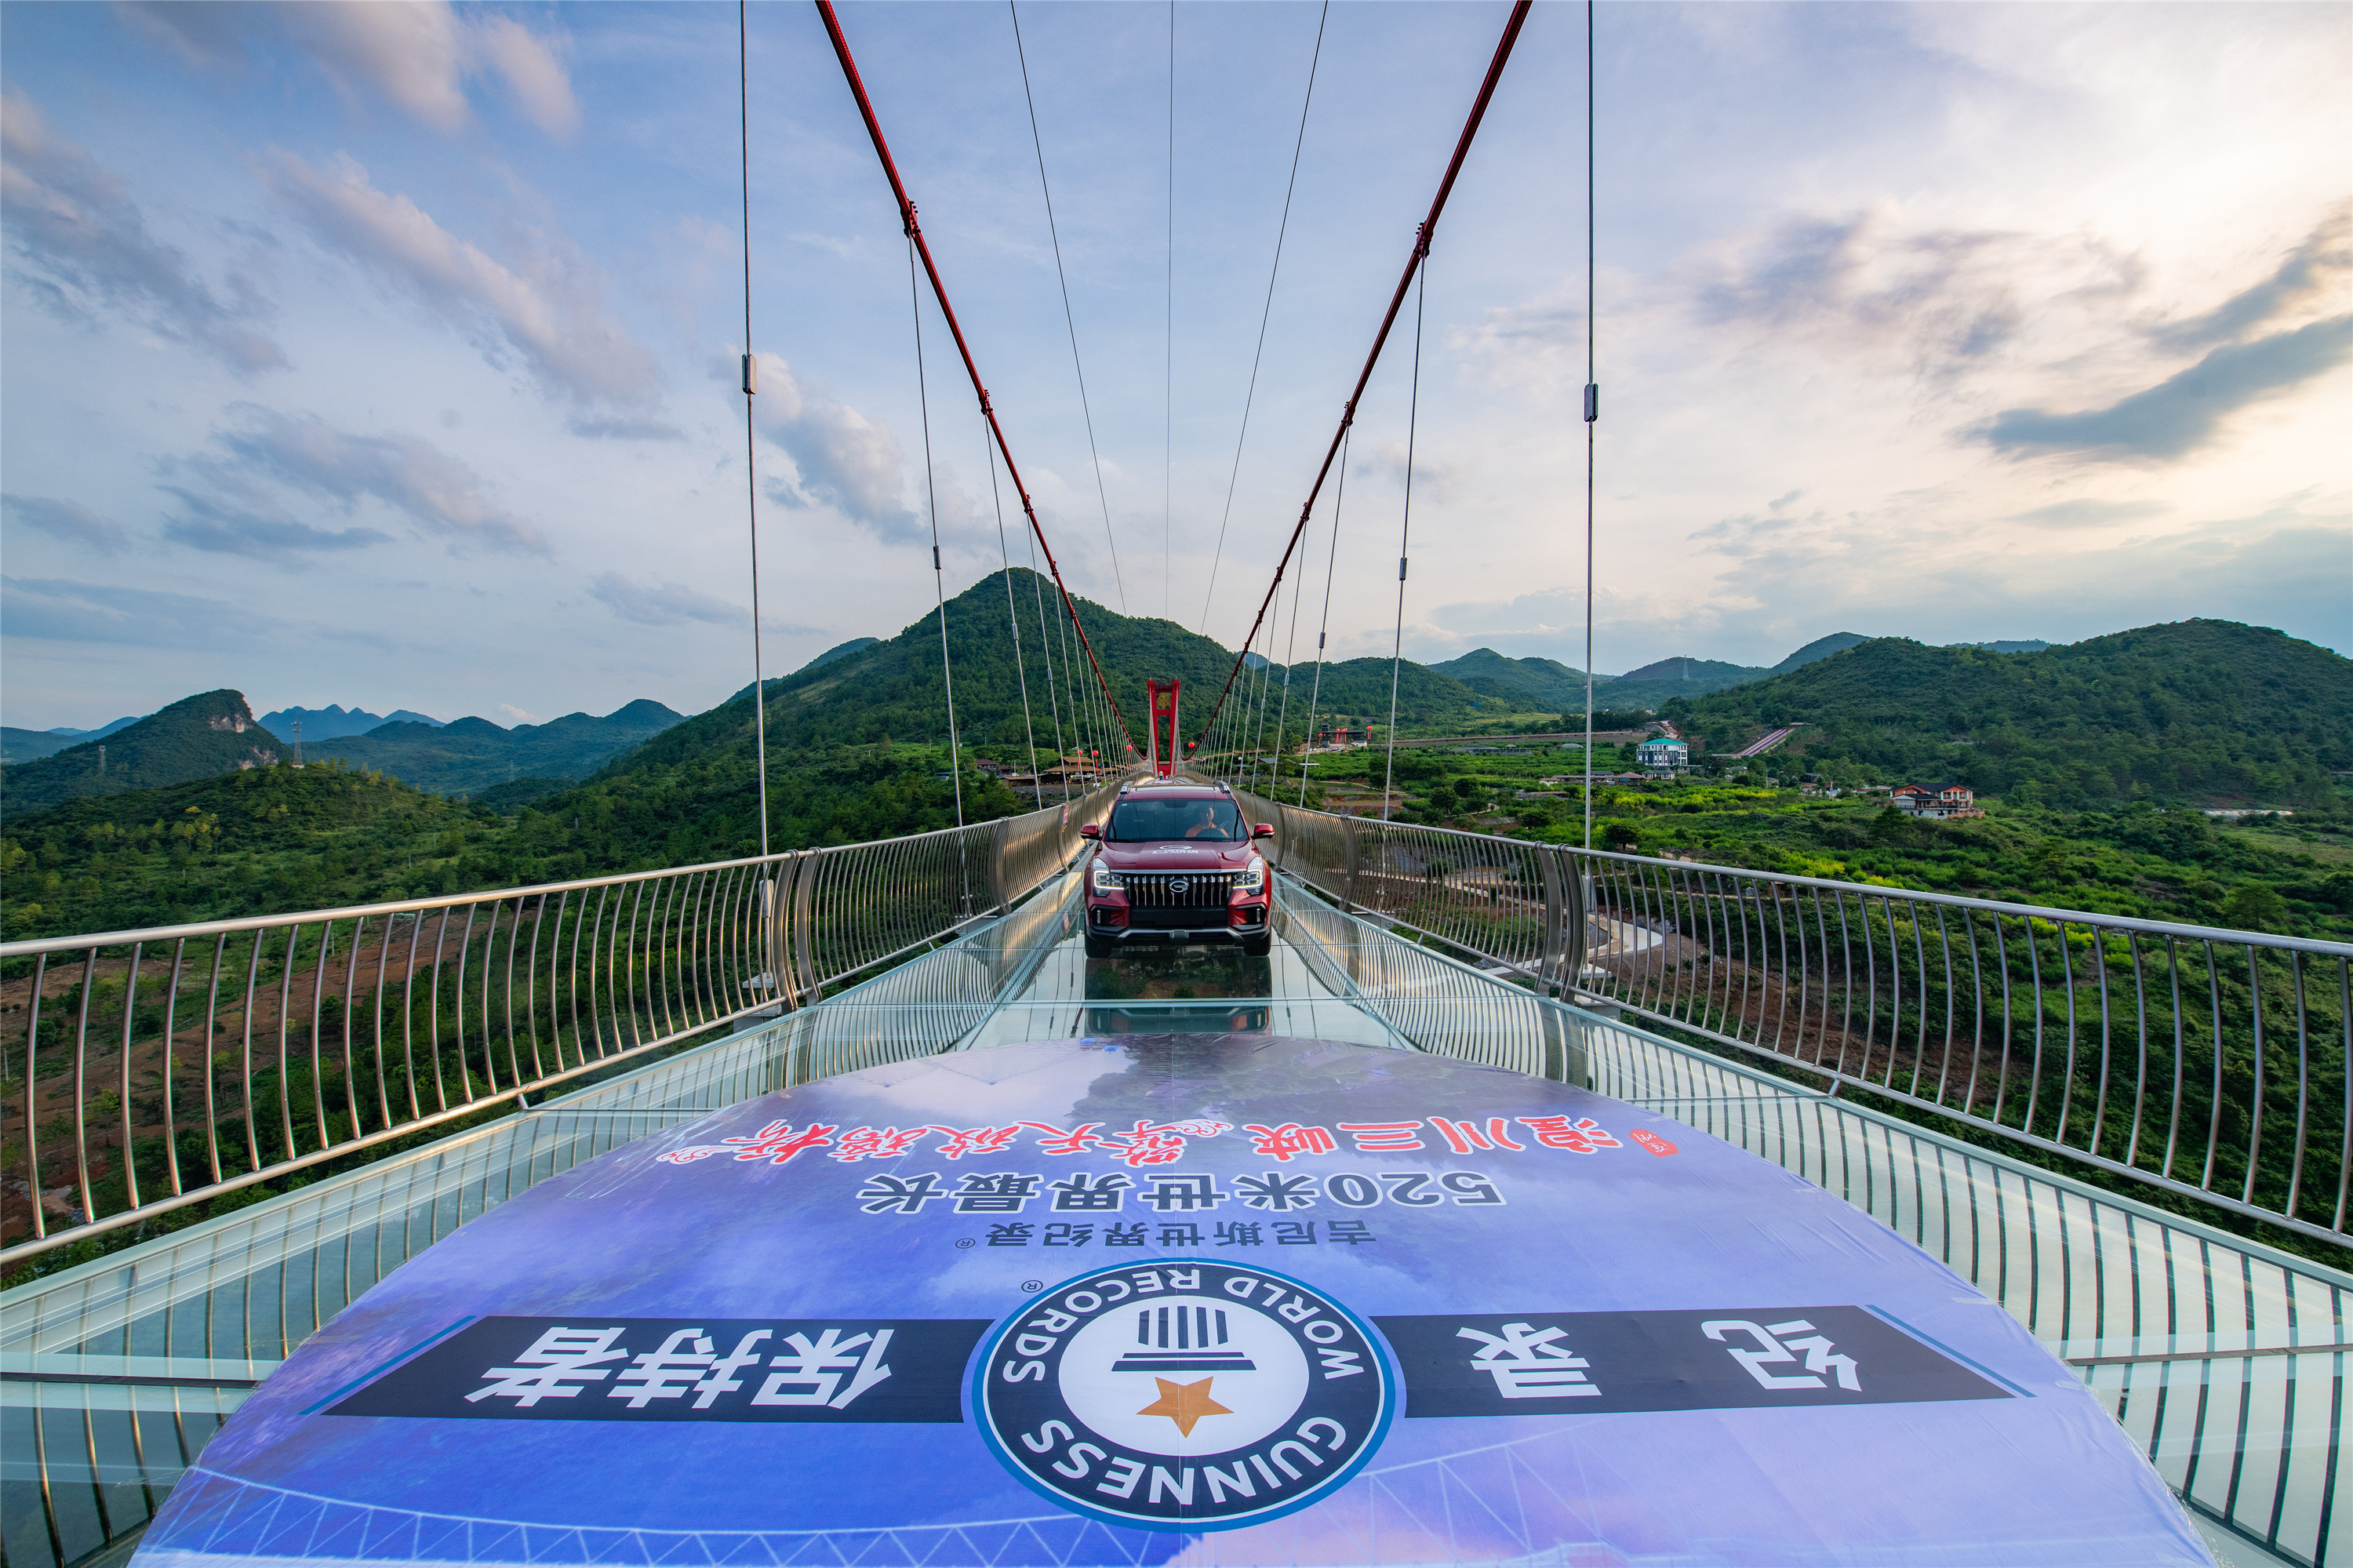 惊!连州擎天玻璃桥收获吉尼斯纪录世界最长玻璃